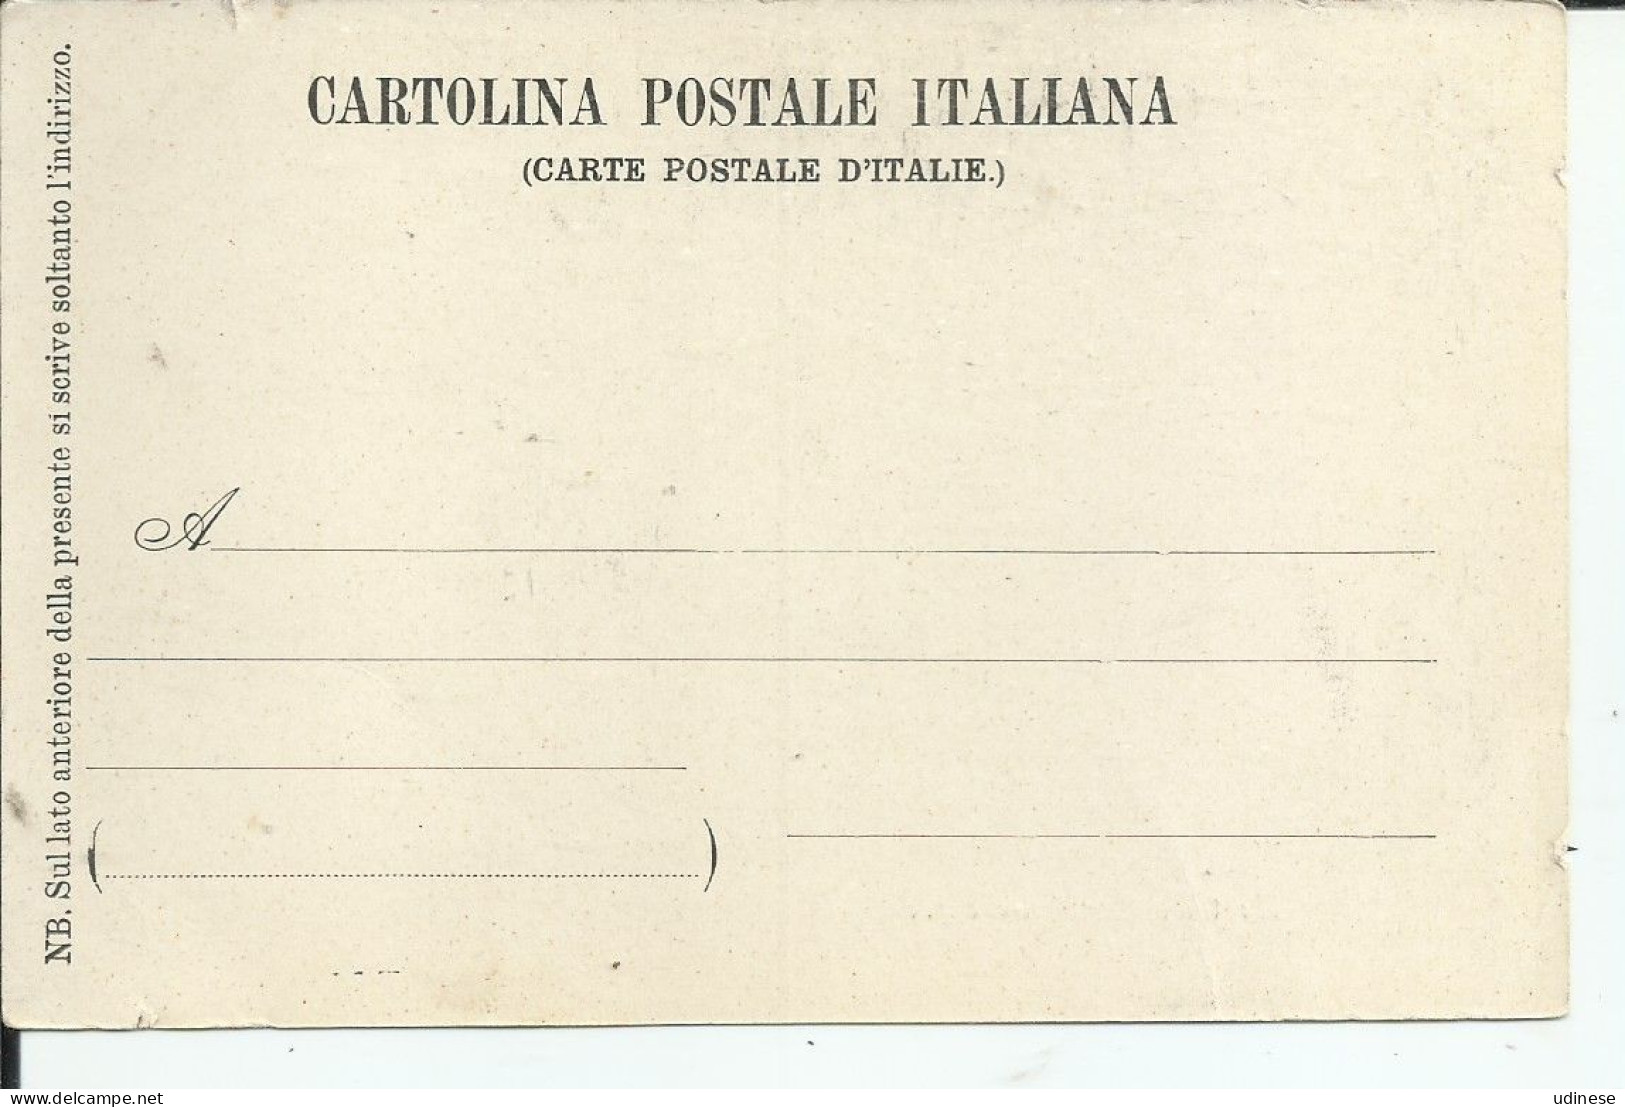 CARTOLINA POSTALE ITALIANA 1900 Ca. - BEATRICE CENCI IN CARCERE, DIPINTO DI ACHILLE LEONARDI - Presidio & Presidiarios